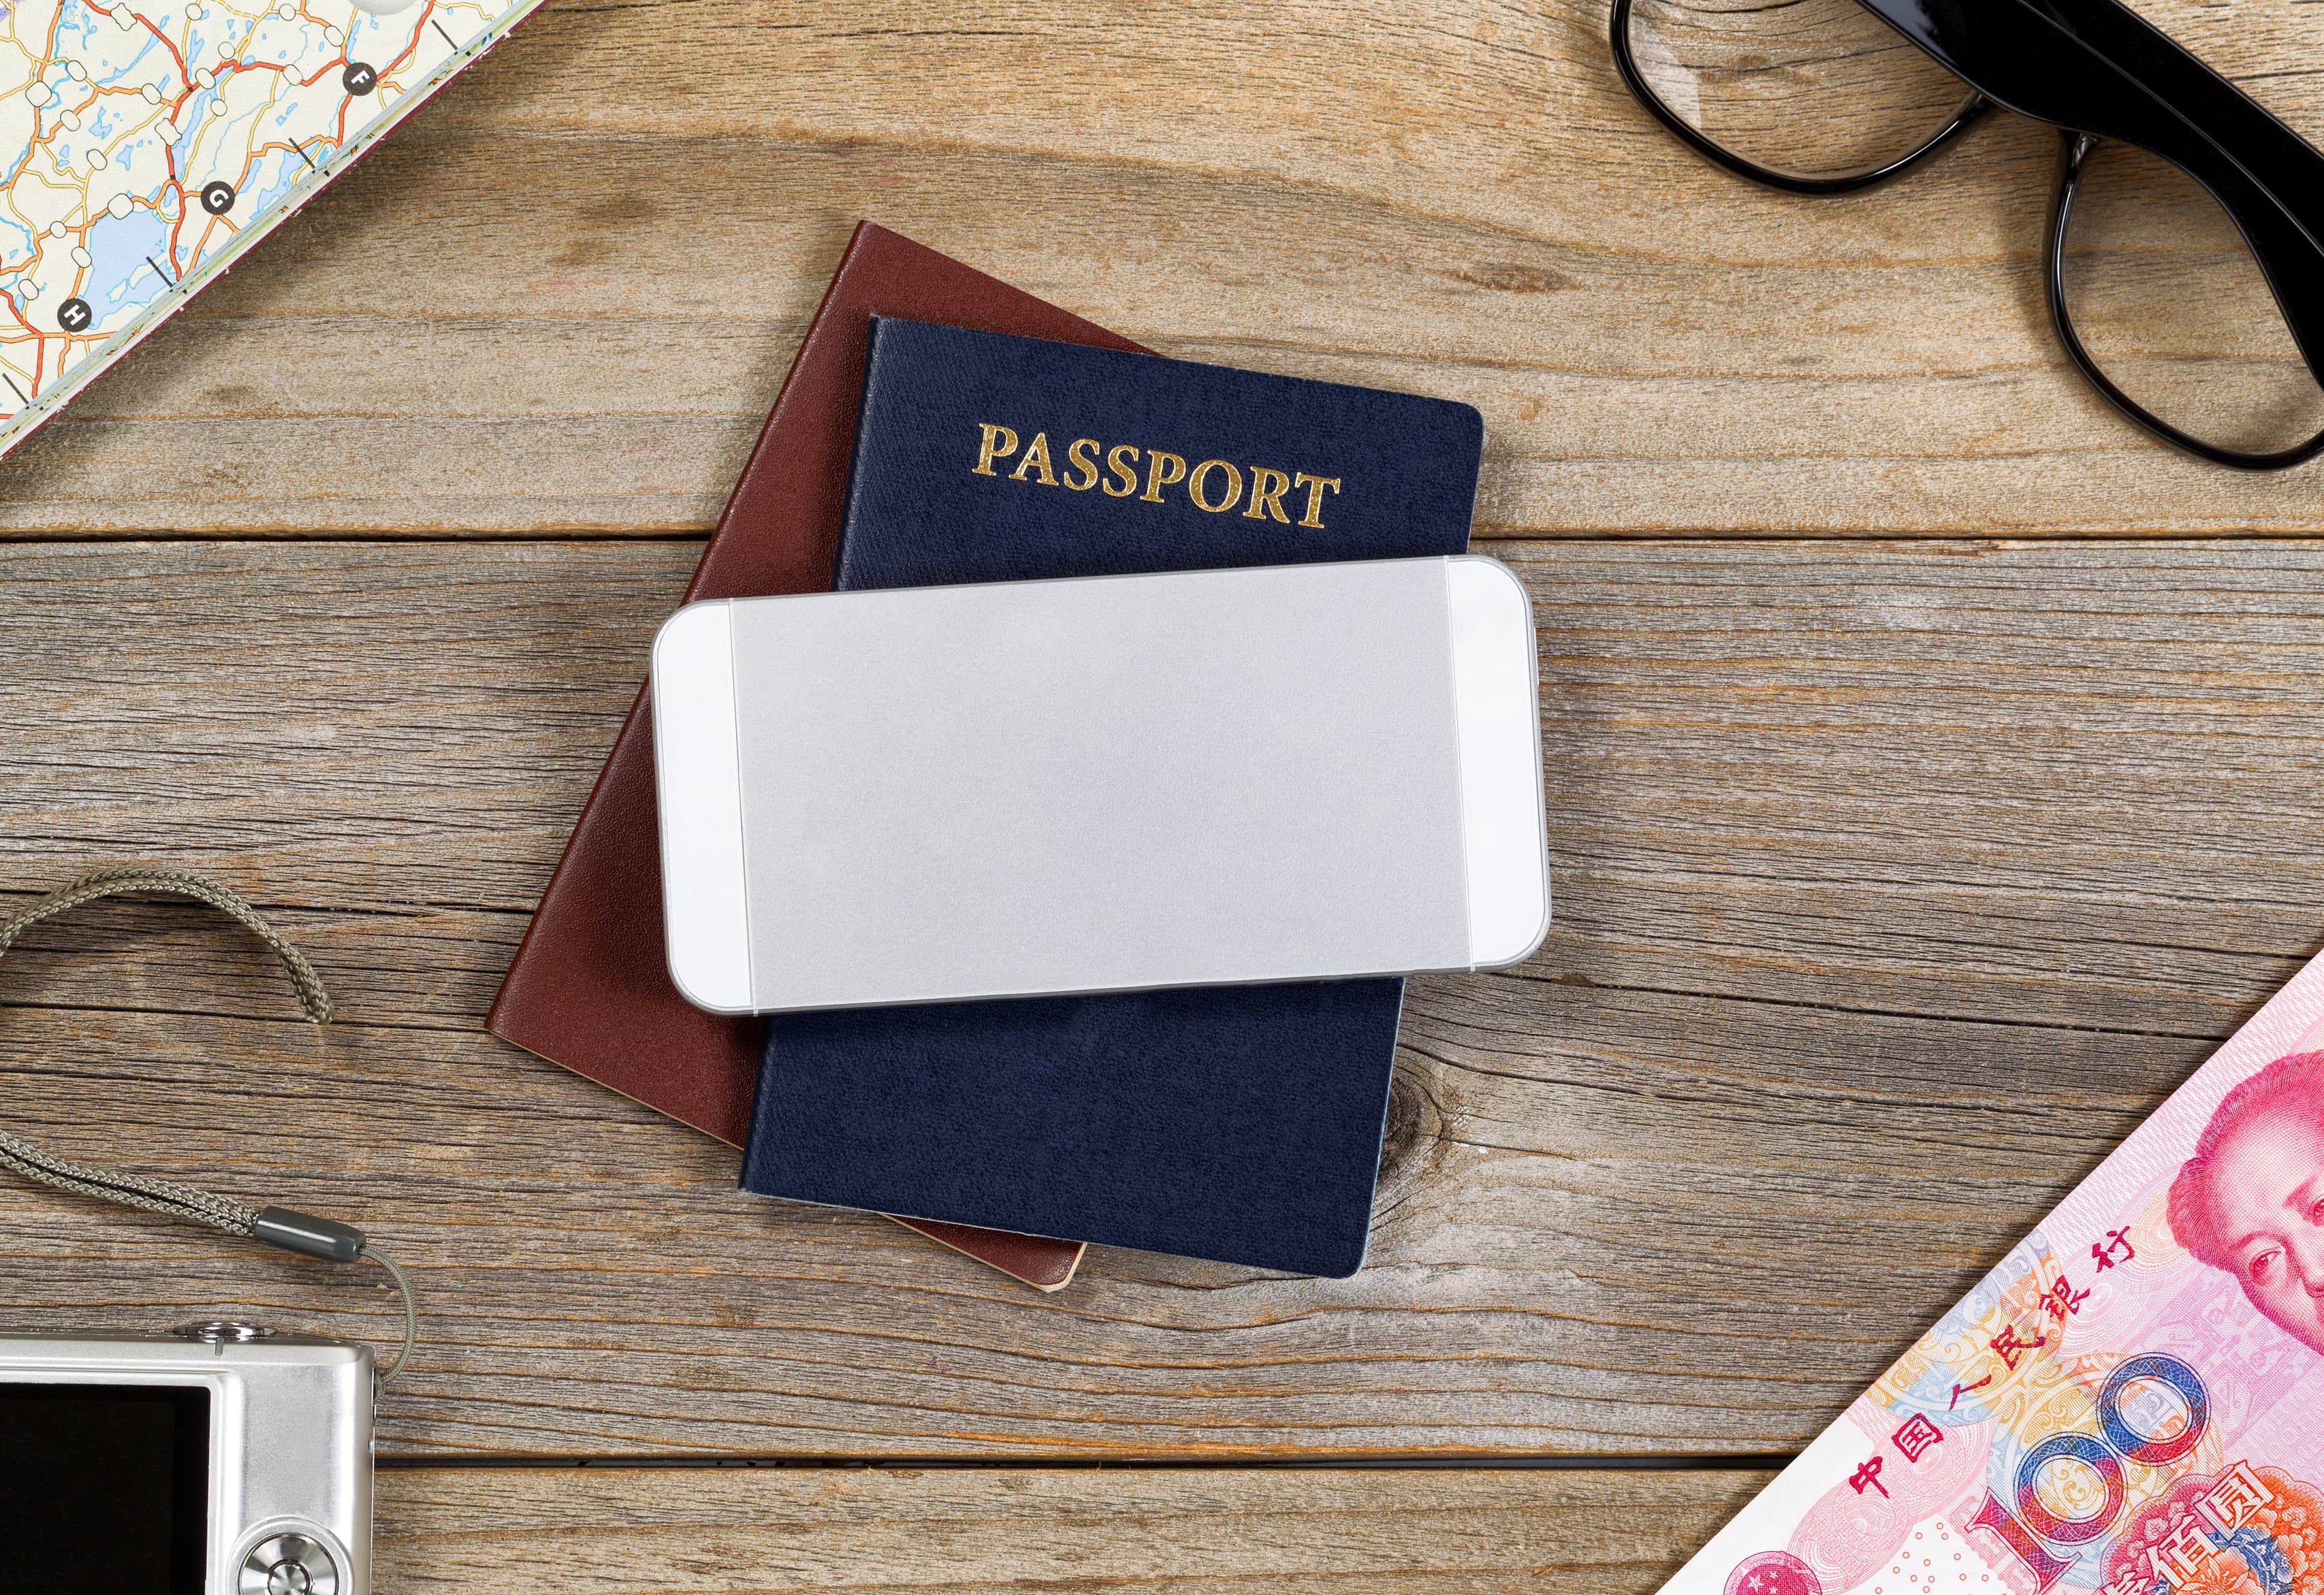 passport and phone